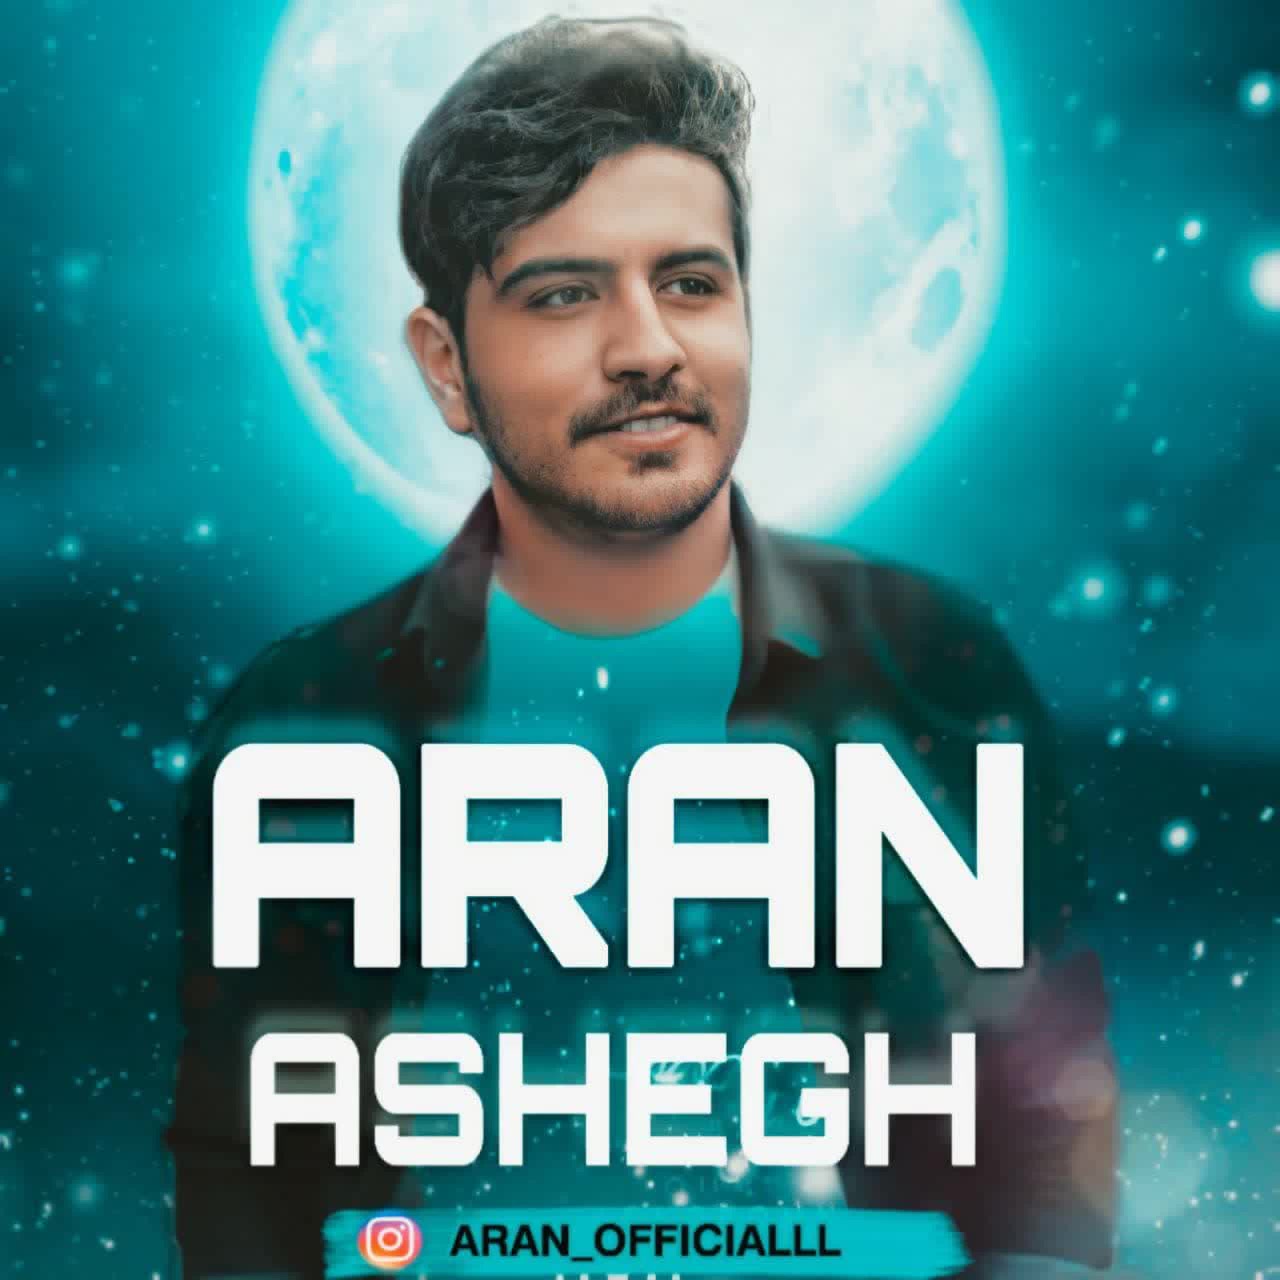 آهنگ جدید Aran به نام Ashegh | آهنگ آران به نام عاشق